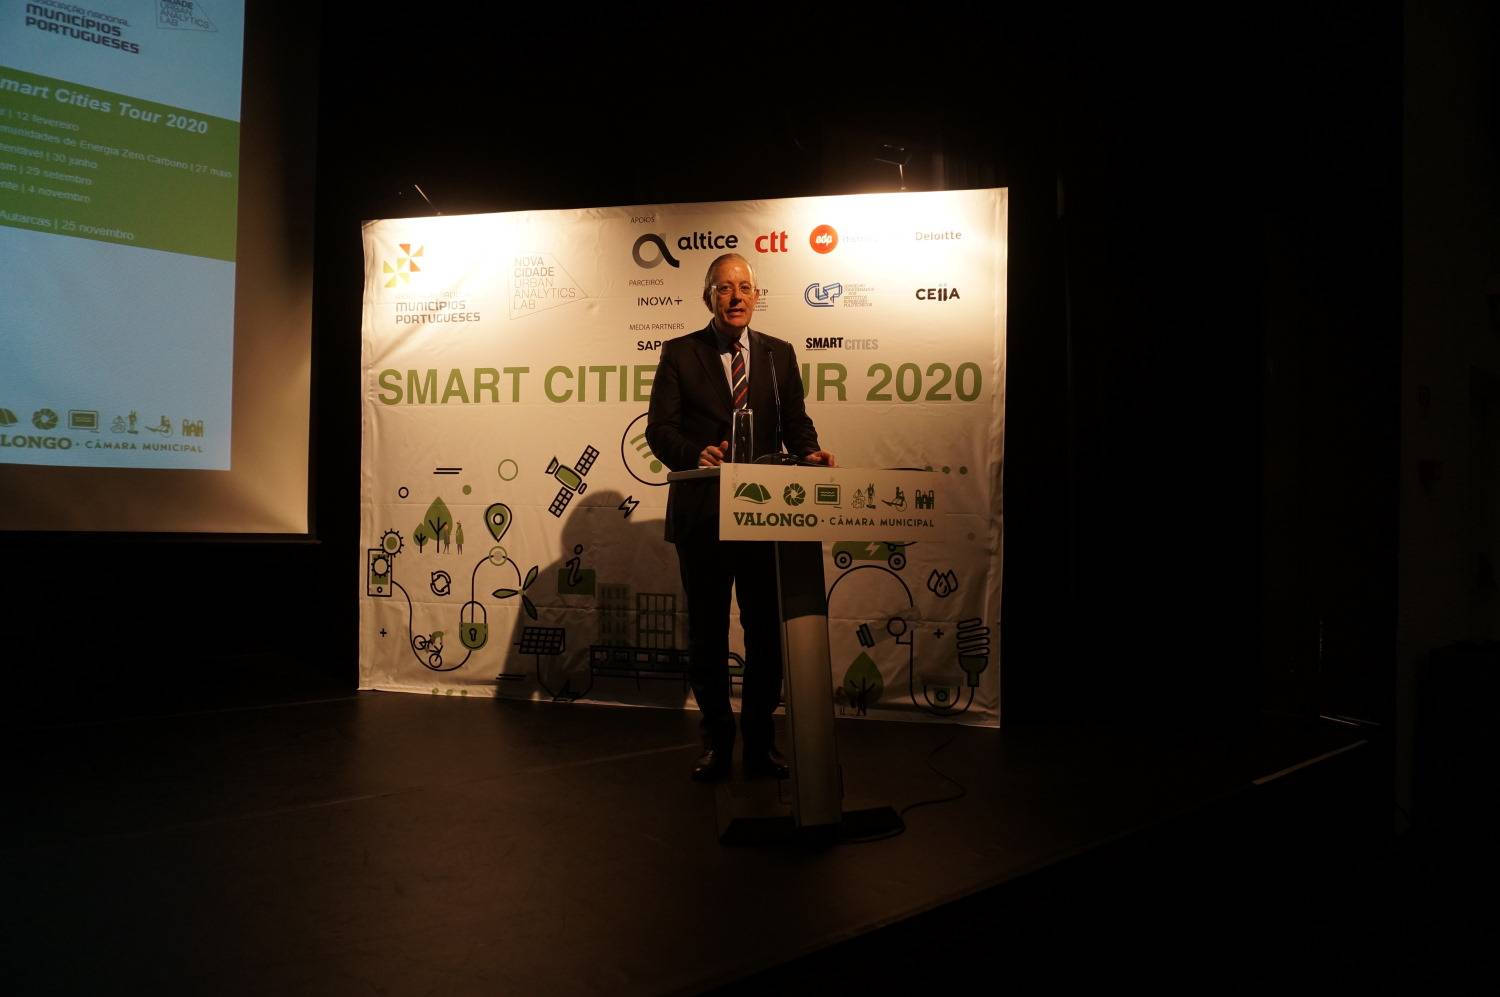 (Português) Smart Cities Tour 2020 | Cidade Circular